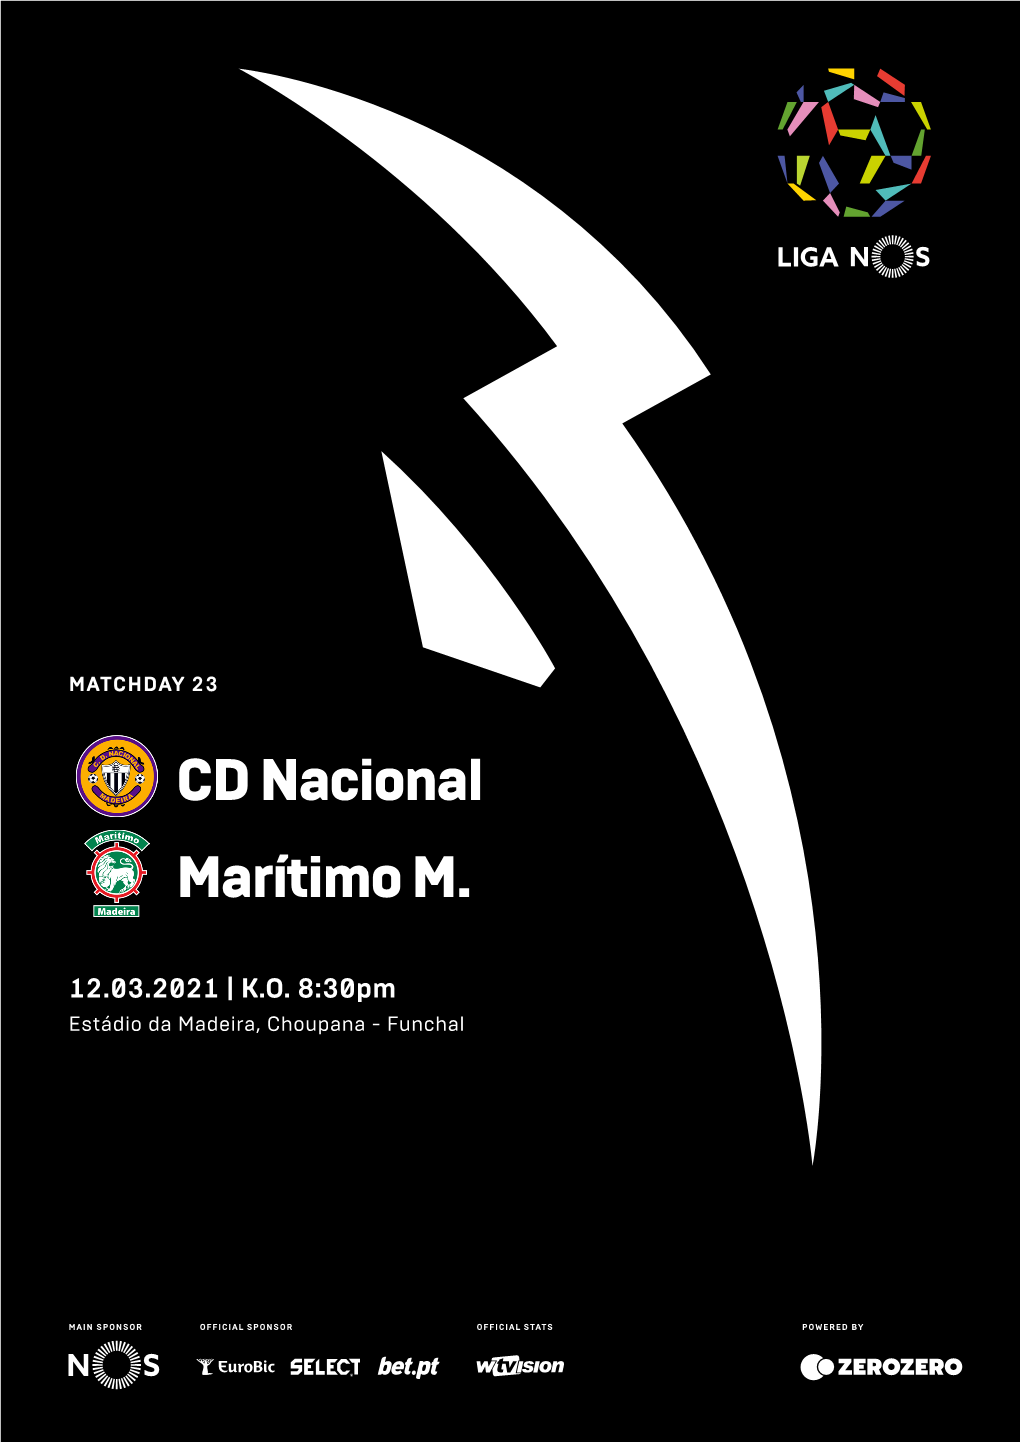 CD Nacional Marítimo M